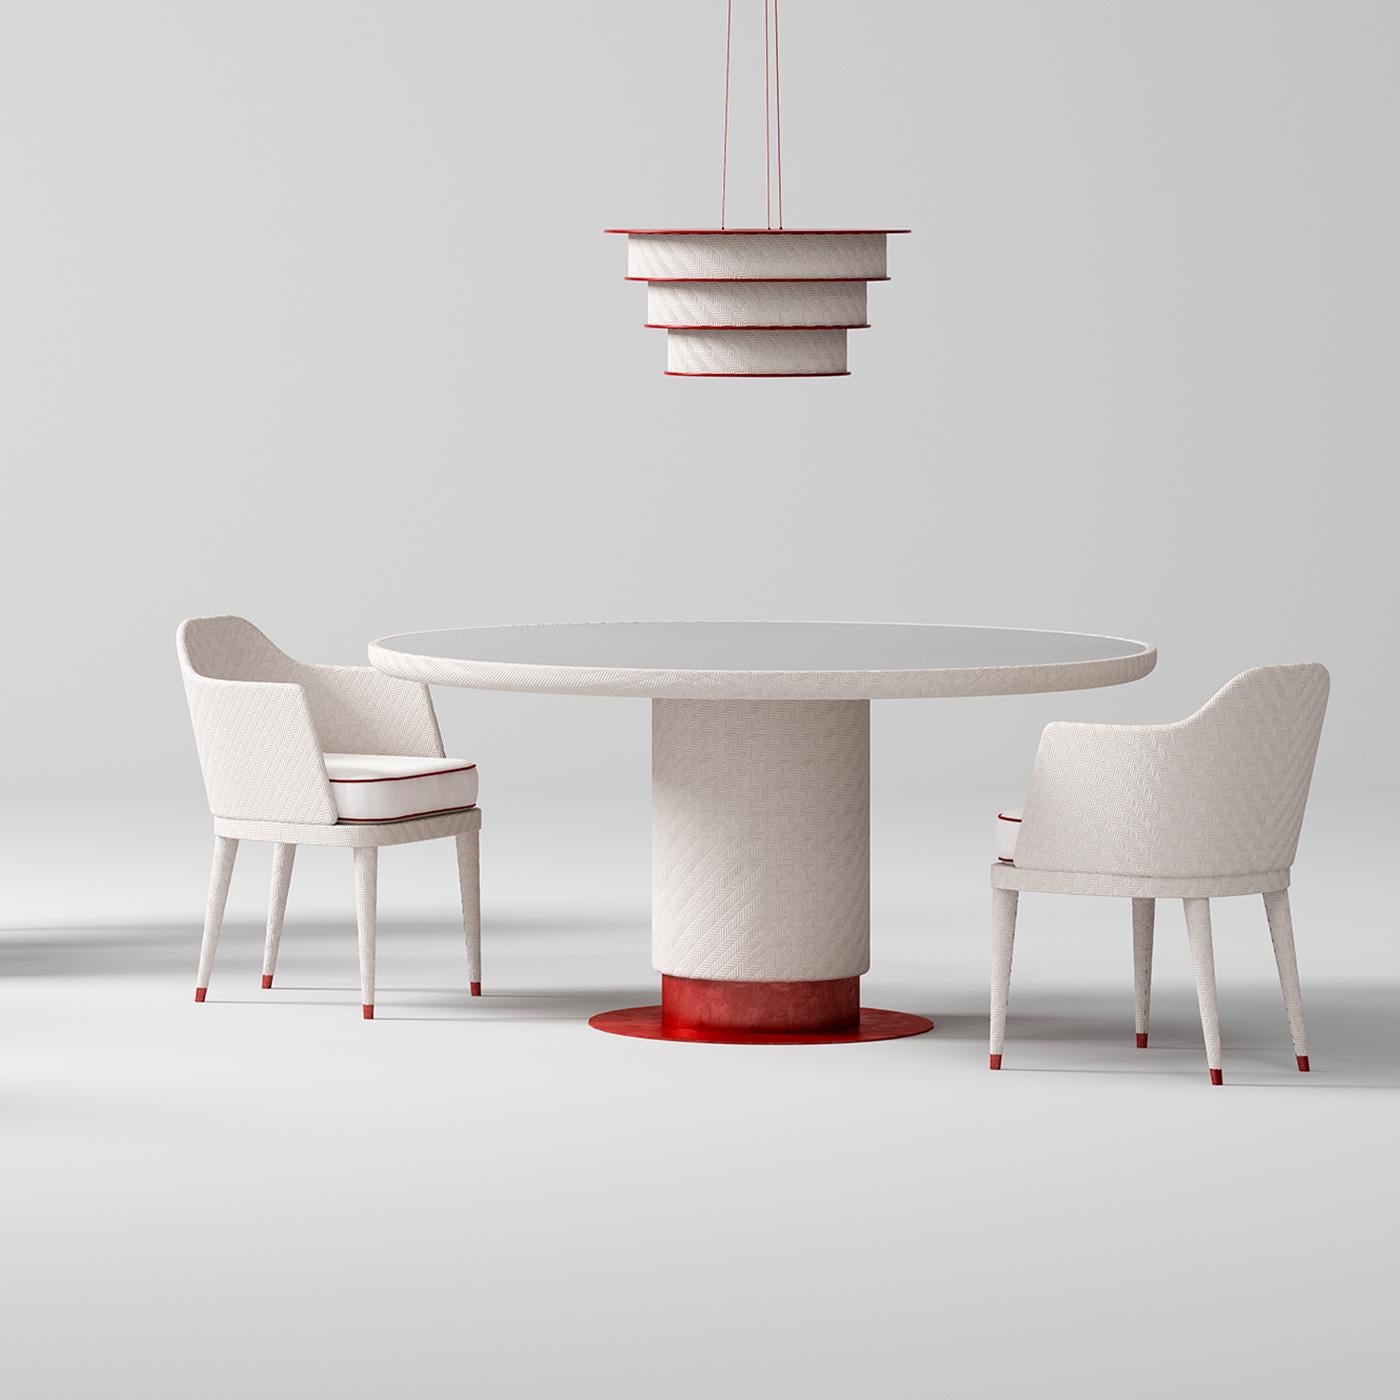 La ligne monolithique et sculpturale de cette superbe table s'adapte facilement aux espaces extérieurs grâce à ses matériaux élégants et résistants. Élevée sur une plate-forme plate en fer galvanisé poli et recouvert de poudre époxy rouge, la base